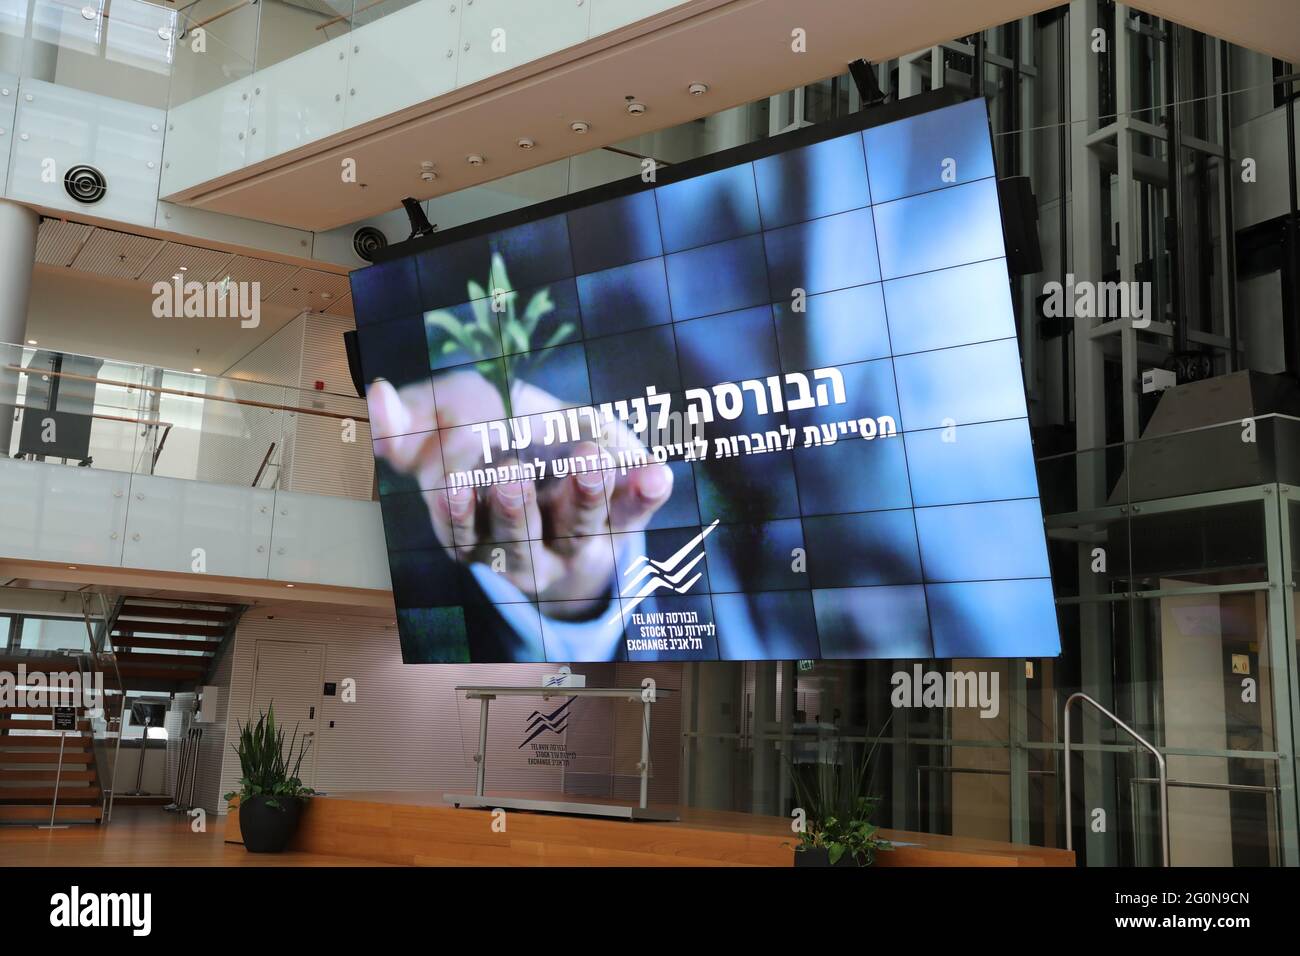 Tel Aviv stock exchange building in Tel Aviv, Israel. Stock Photo